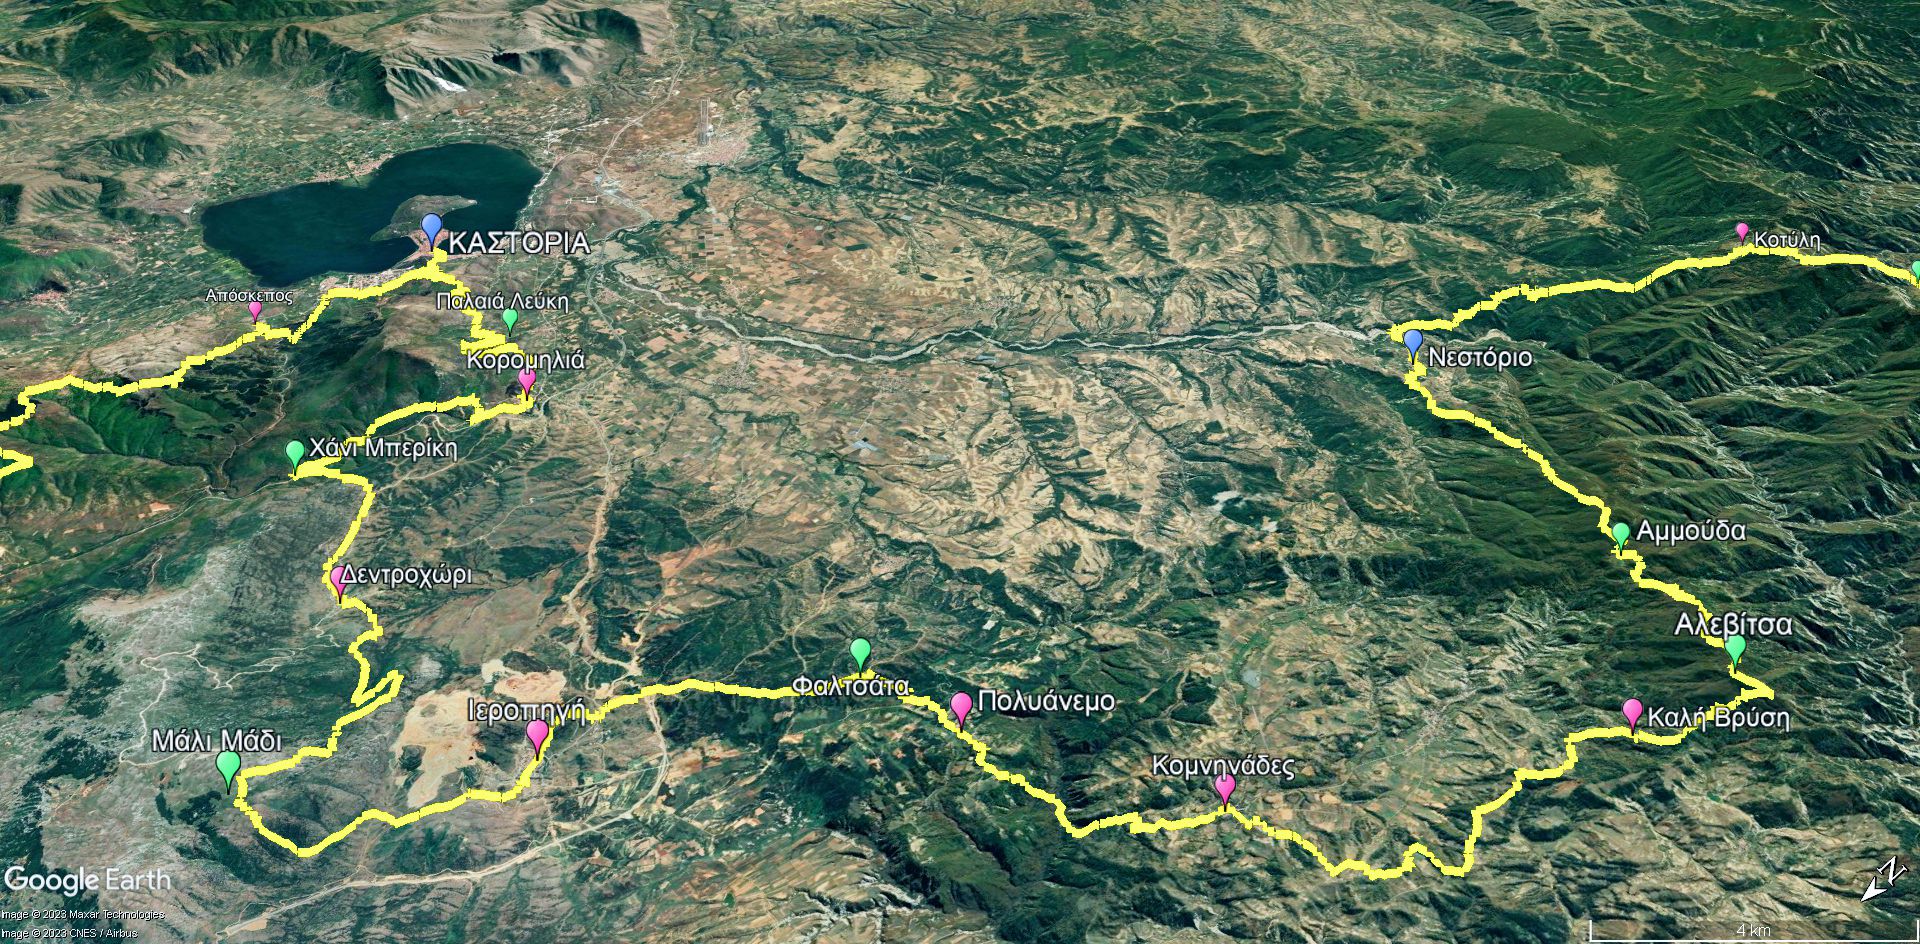 Μεγάλη Διαδρομή Γράμμος-Πρέσπα: Το σκέλος από το Νεστόριο μέχρι την Καστοριά